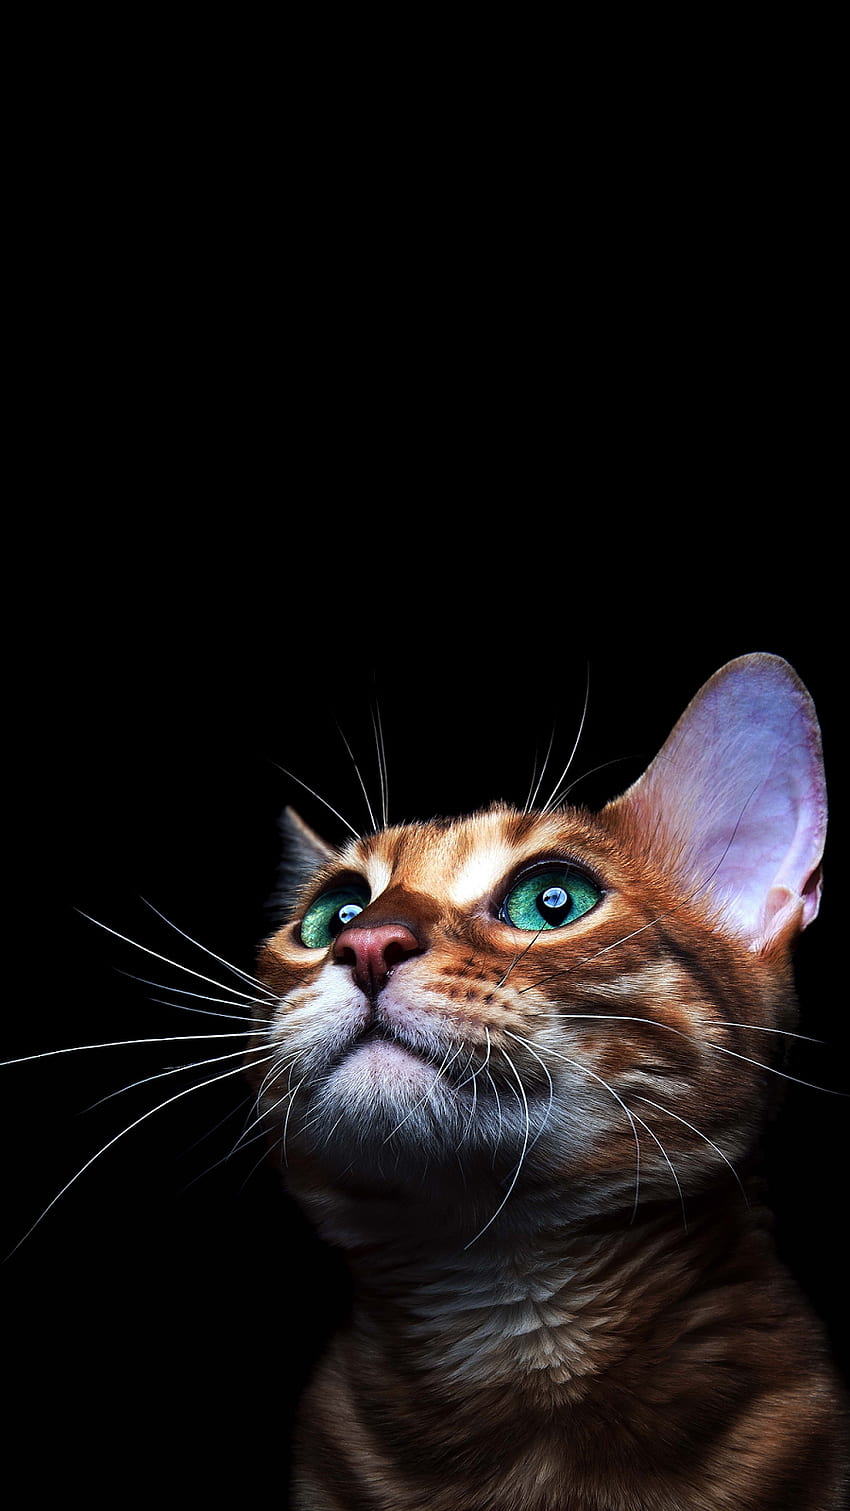 CAT AMOLED PHONE . Cat , Beautiful cat, Cat aesthetic, Weird Cat HD phone wallpaper